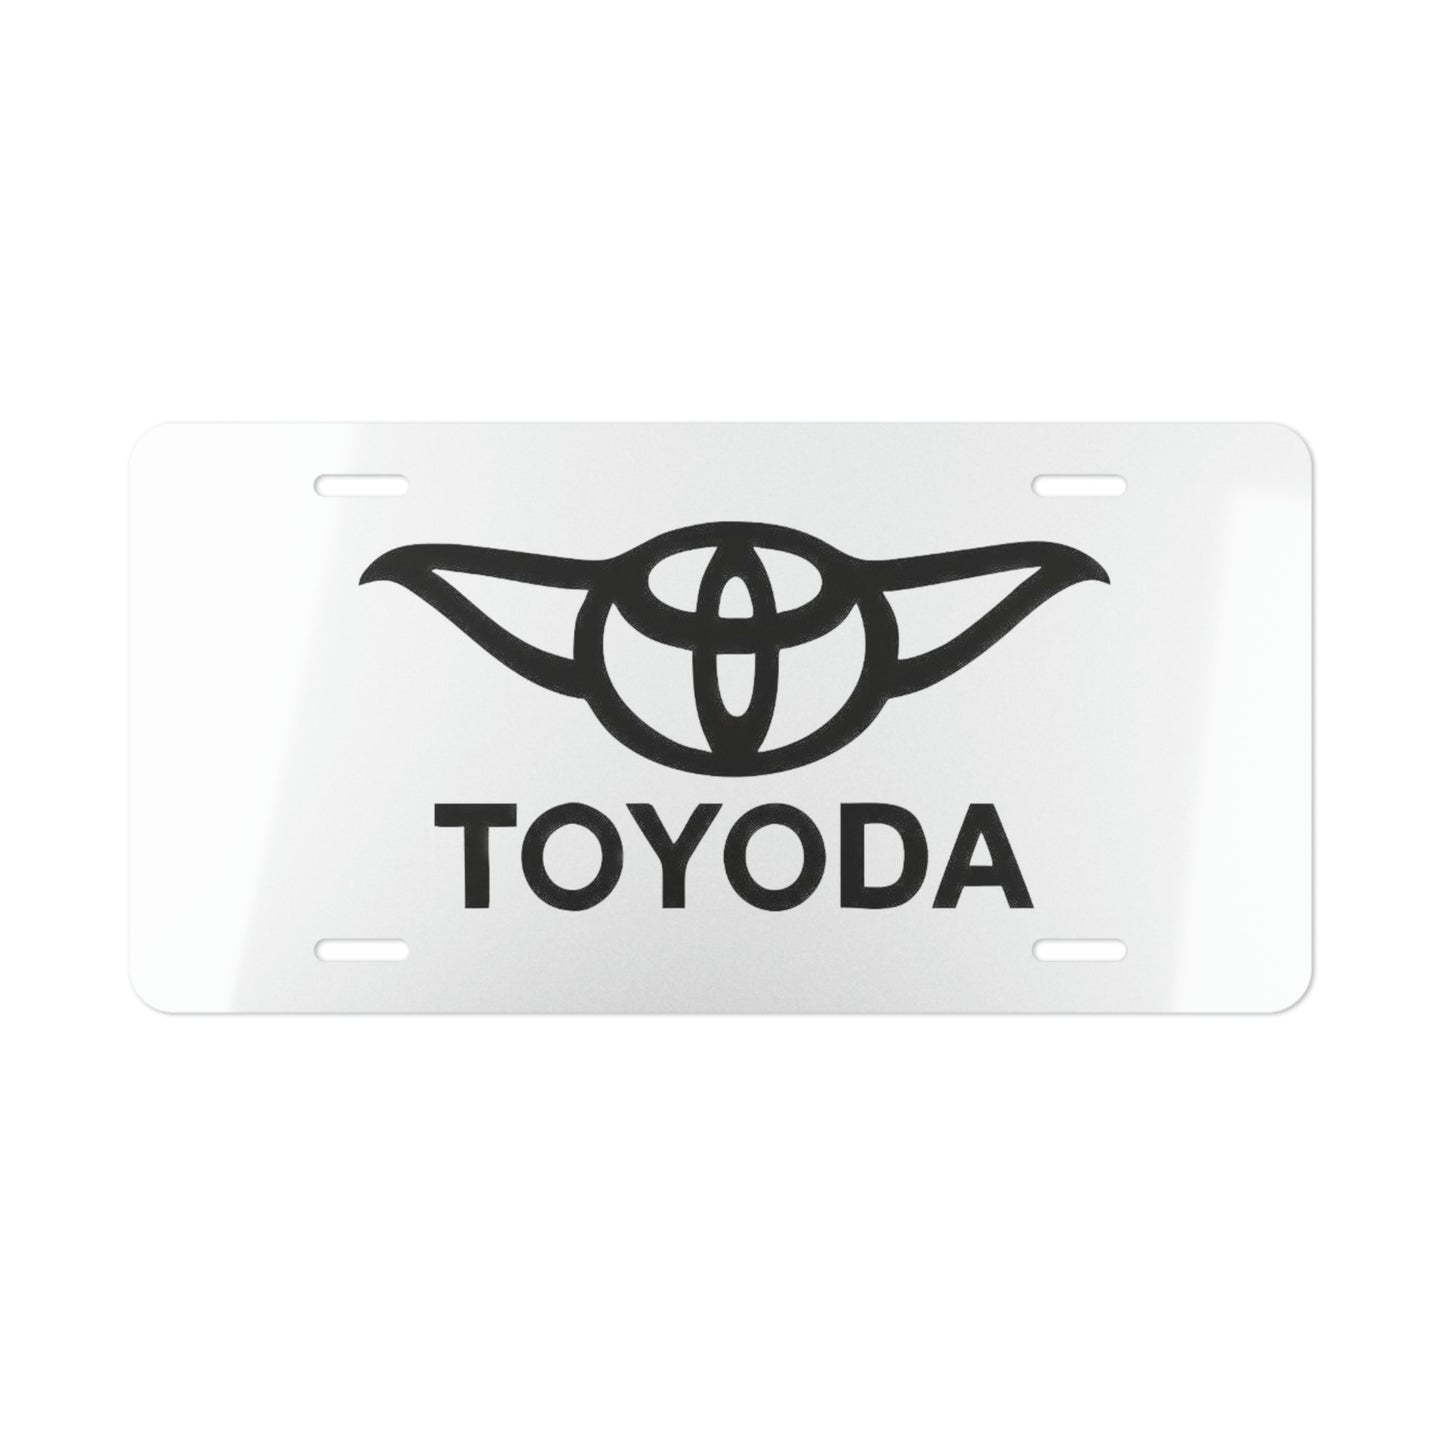 Toyoda - Toyota Vanity License Plate